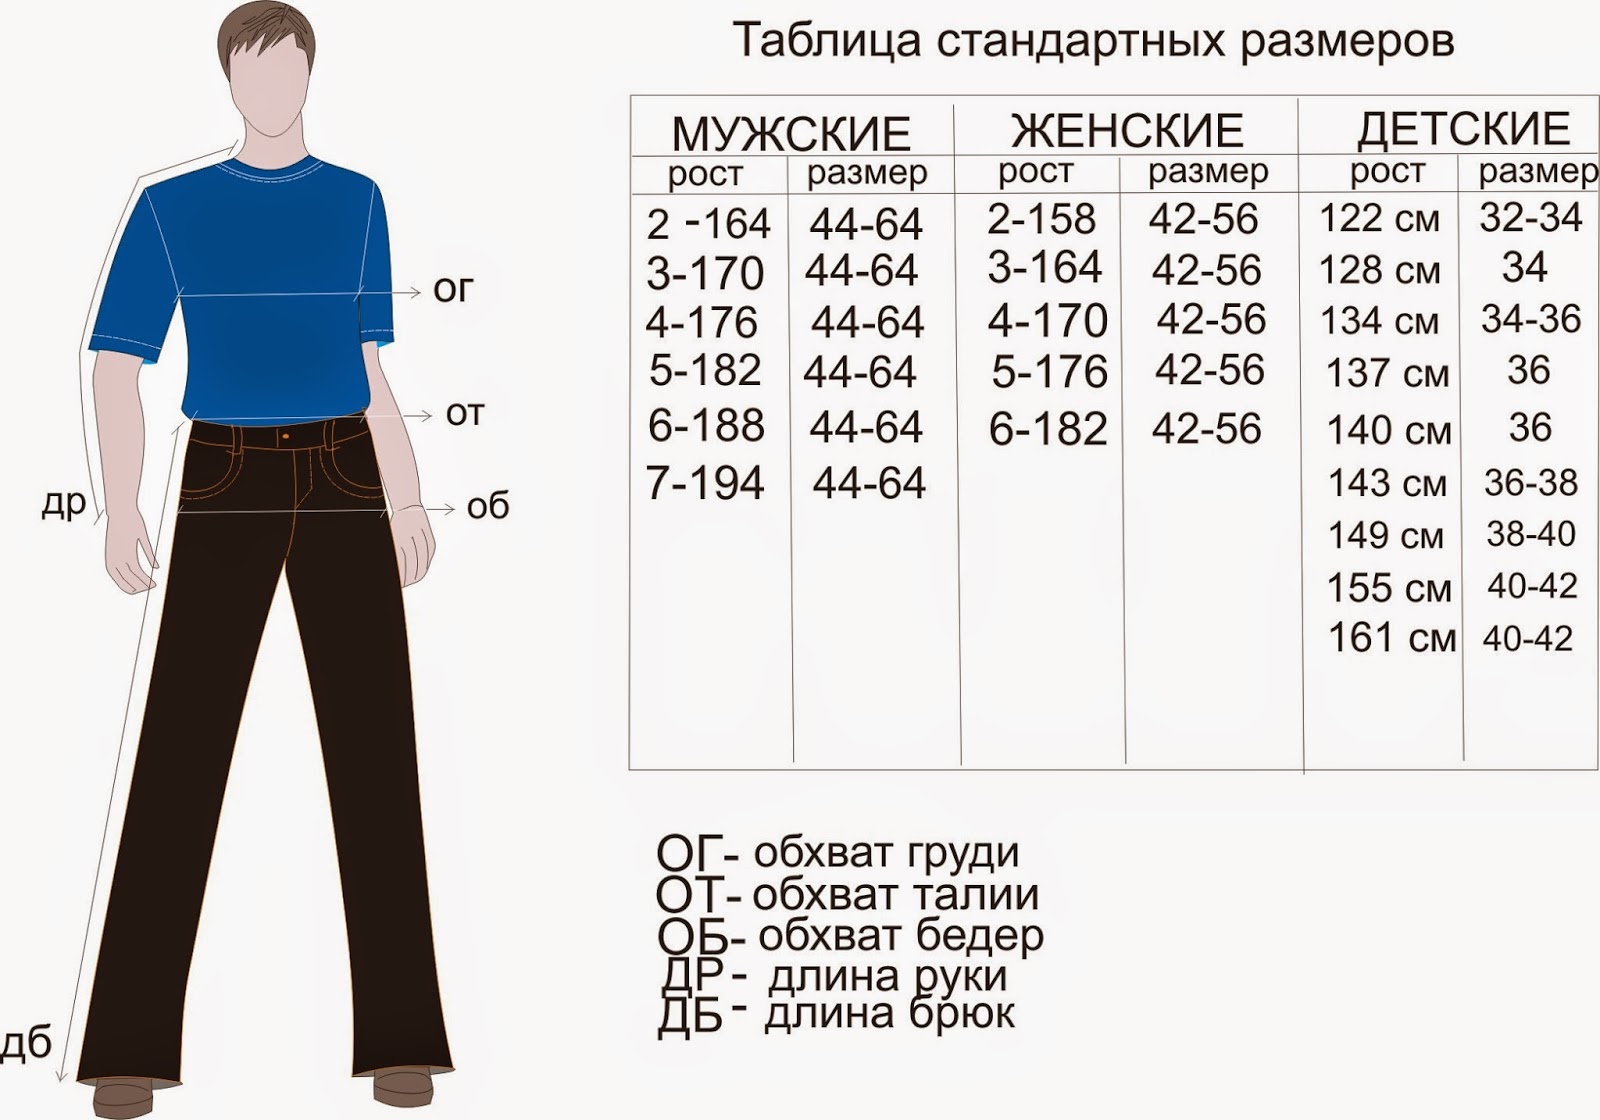 Размер одежды для мужчин таблица как определить. Размеры штанов мужских таблица на рост 176. Размер штанов на рост 170 мужские. Размеры штанов мужских таблица рост 182. Мужские брюки таблица размеров и роста.